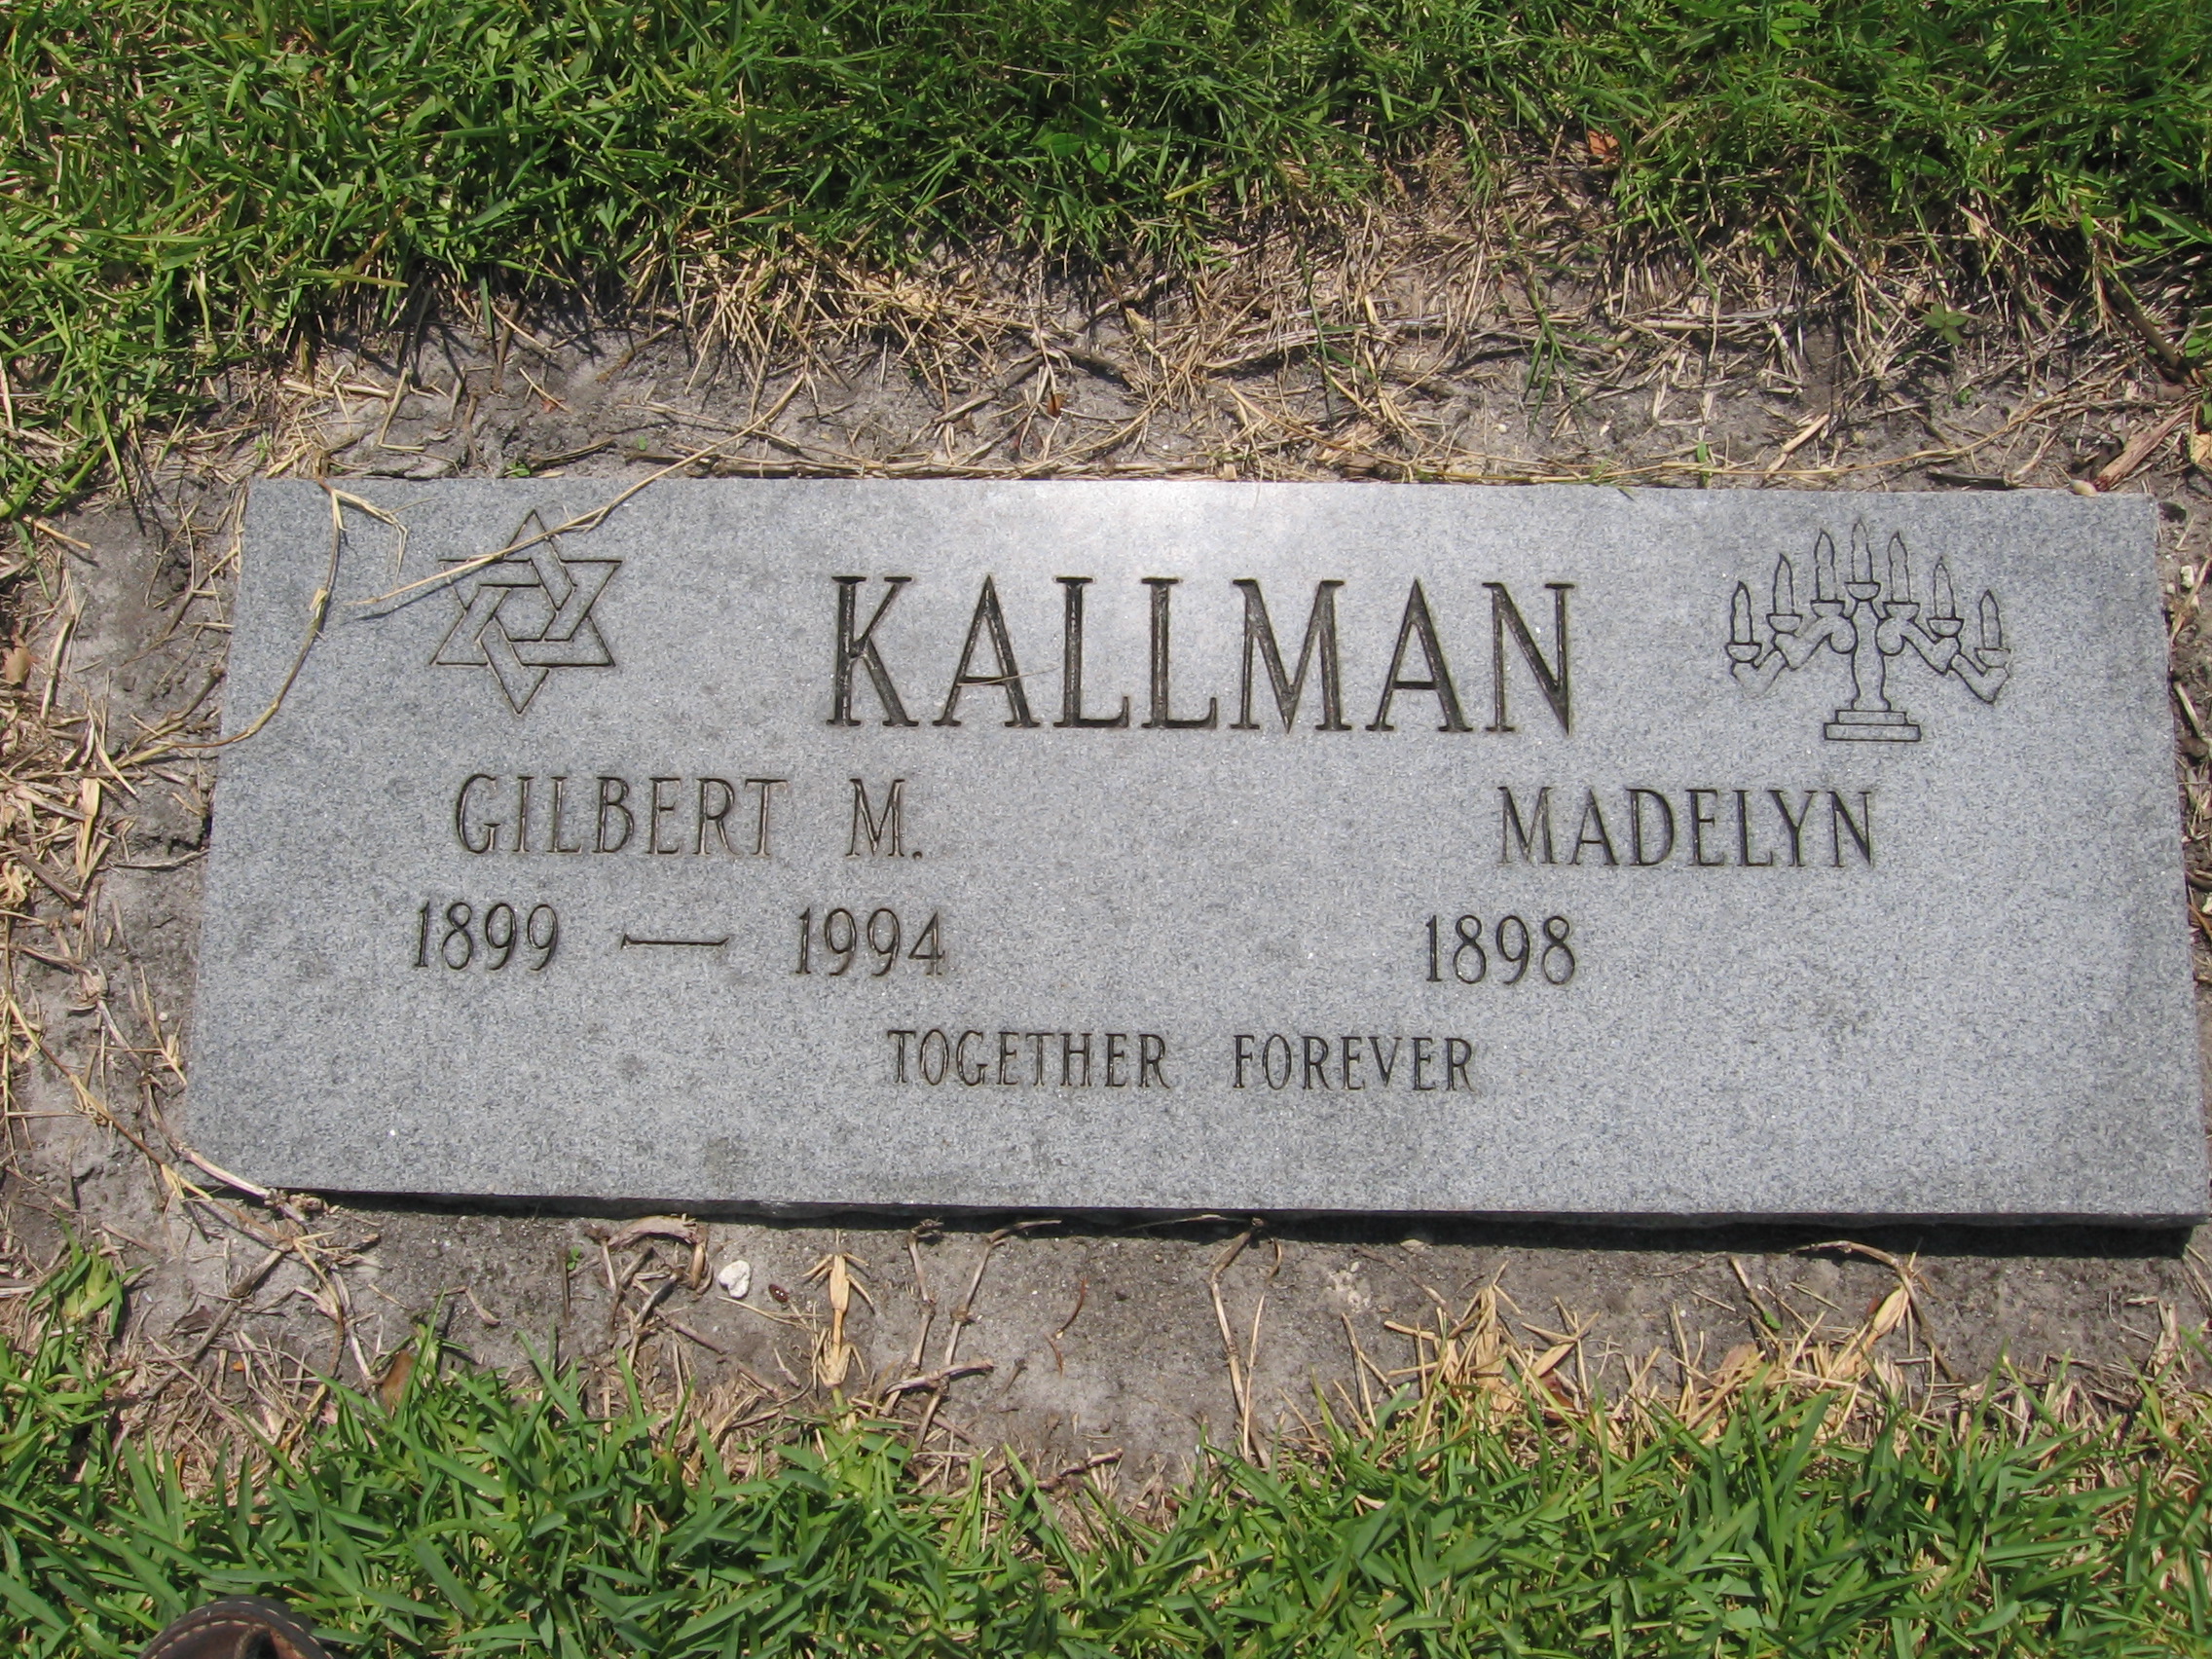 Gilbert M Kallman